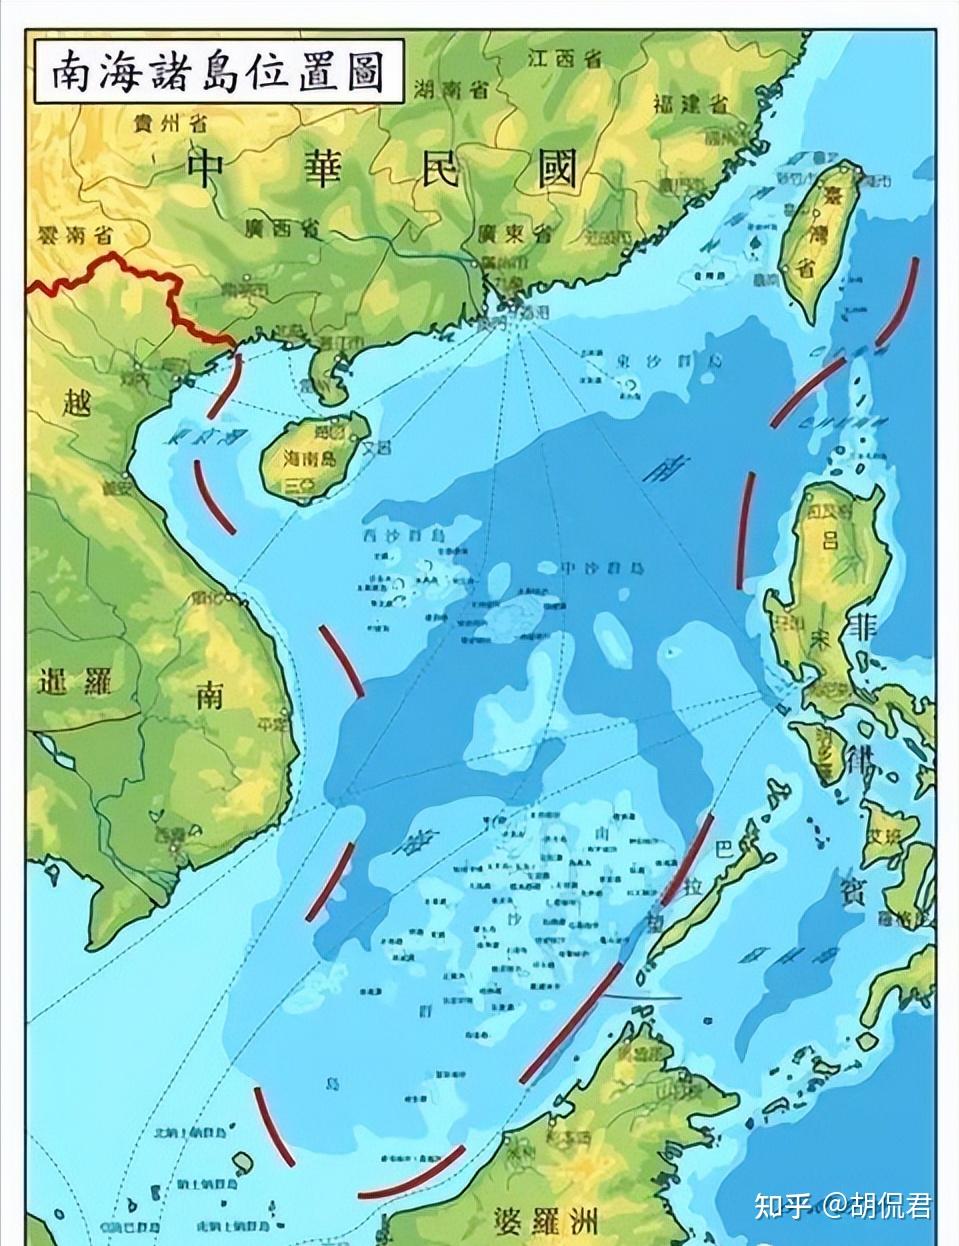 中华人民共和国政府宣布中华人民共和国北部湾北部领海基线,哪些信息